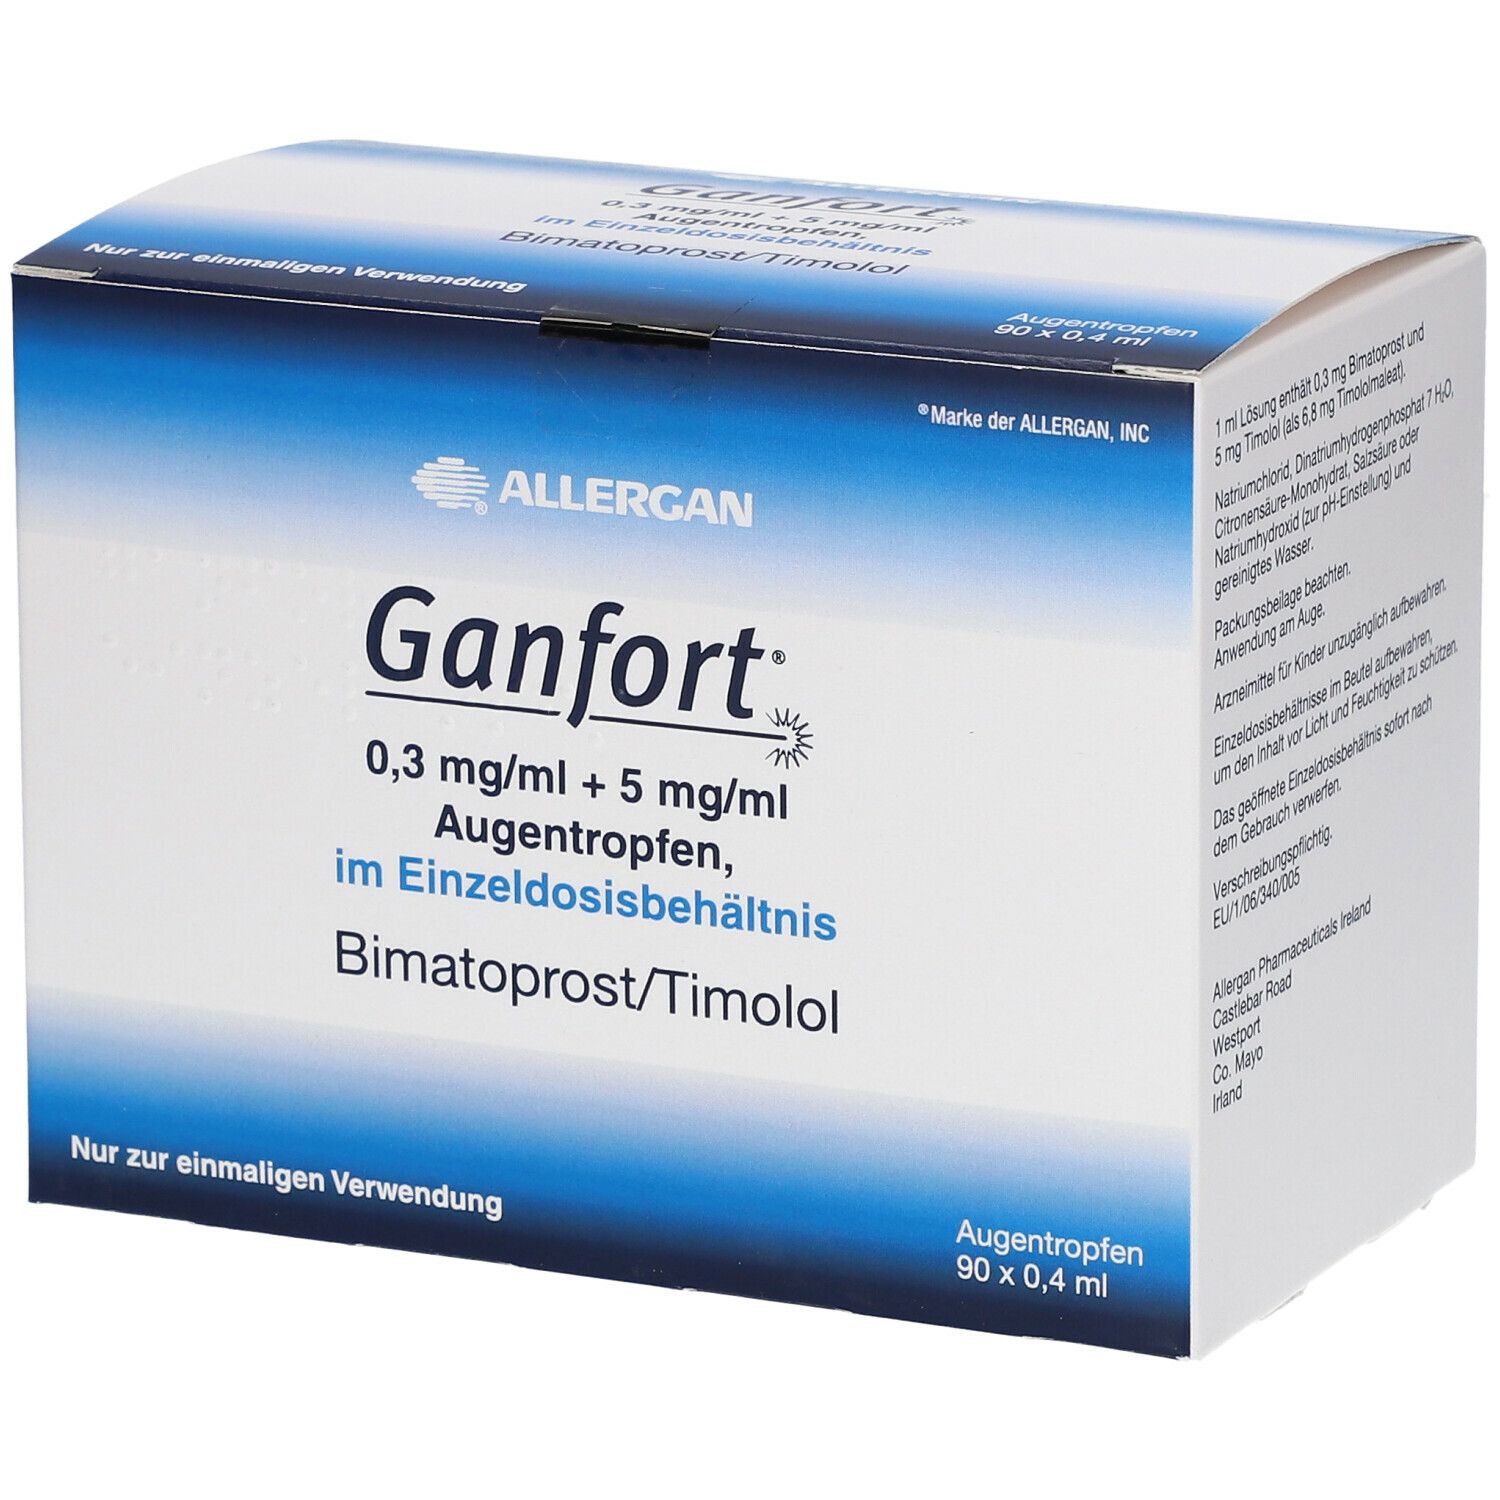 Ganfort 0,3 mg/ml + 5 mg/ml At Im